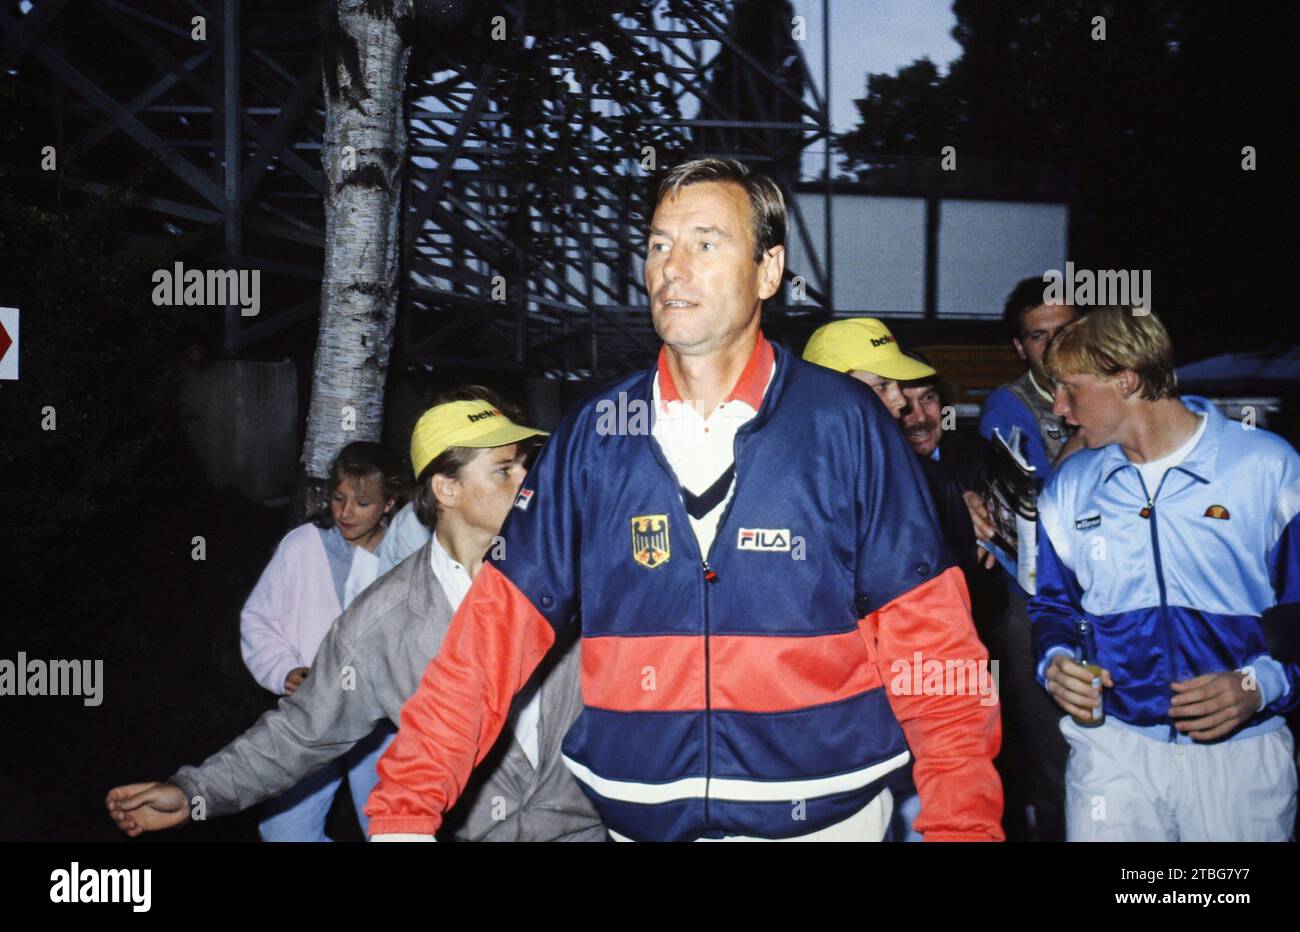 Nikola Niki Pilic, ehemaliger jugoslawischer Tennisspieler und -trainer, rechts mit Boris Becker beim Davis Cup Viertelfinale gegen die USA in München, Deutschland 1985. Foto Stock